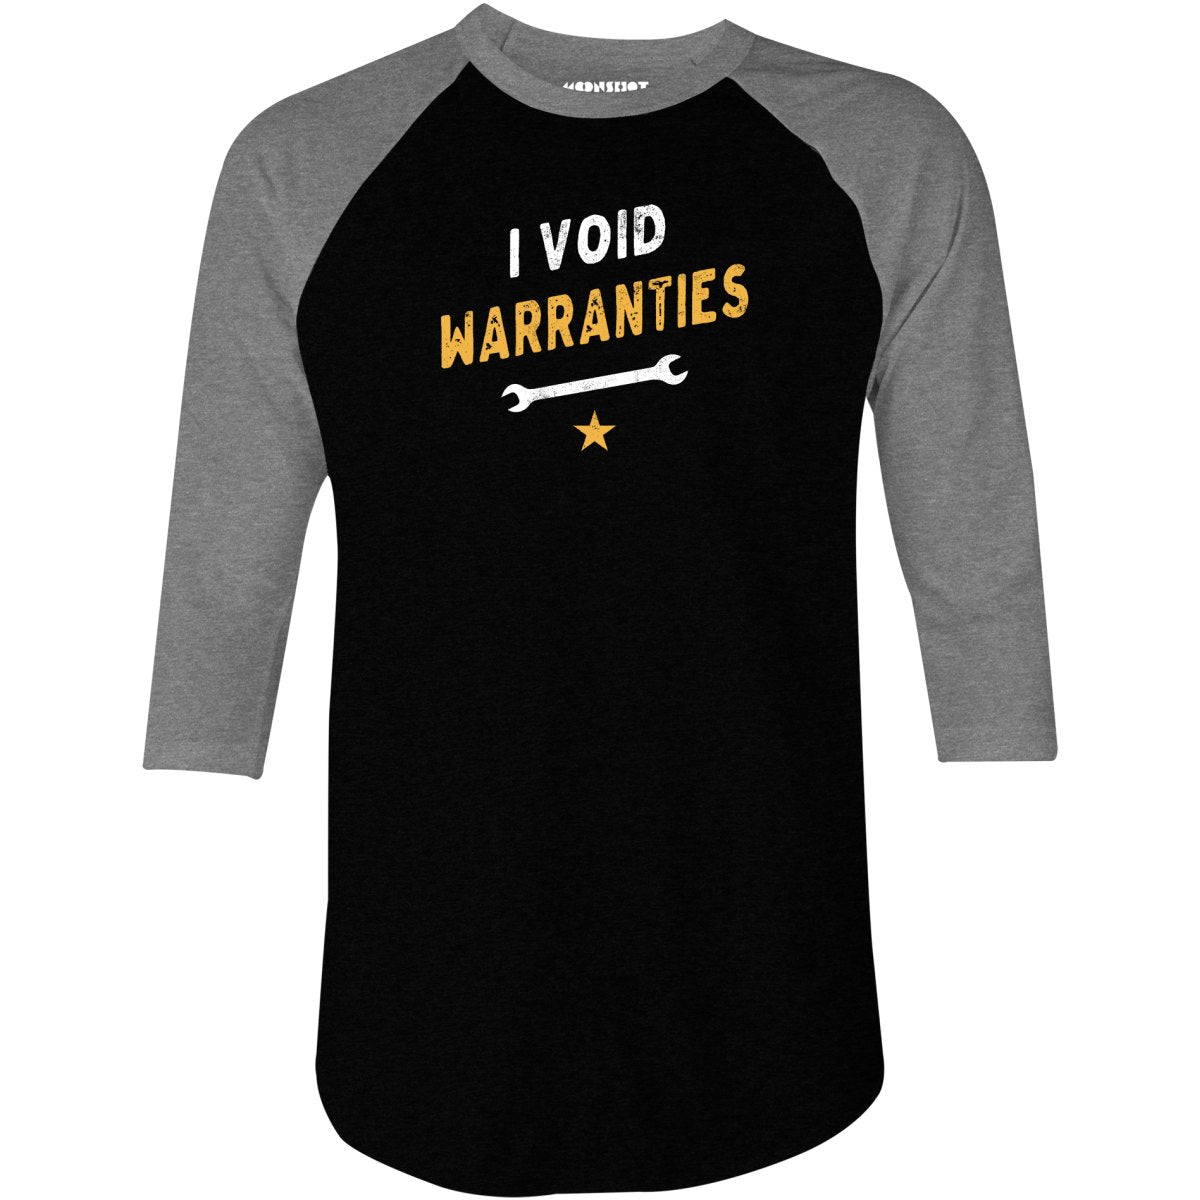 I Void Warranties - 3/4 Sleeve Raglan T-Shirt